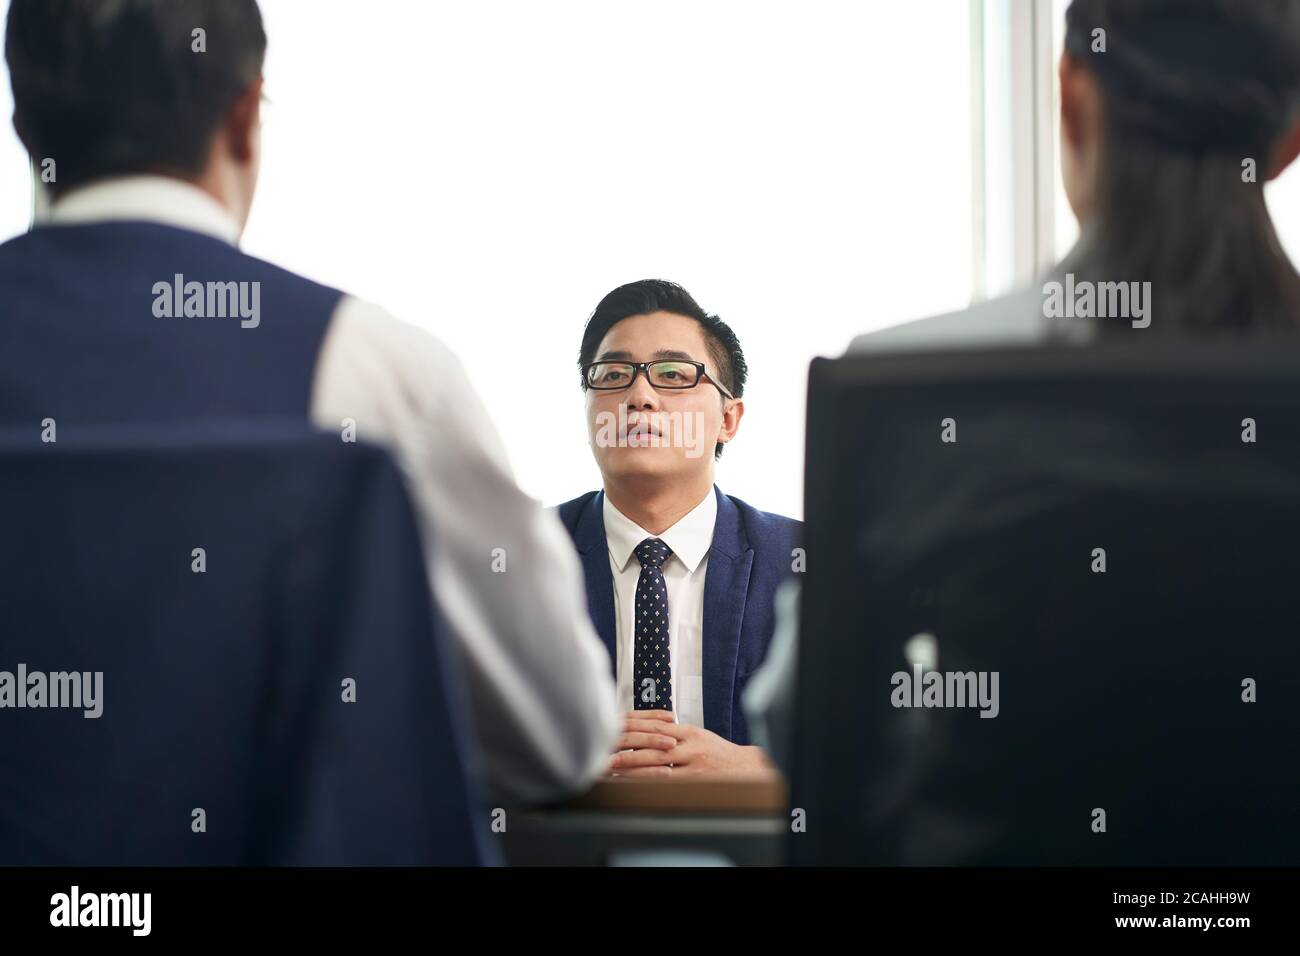 Junge asiatische Business Mann Job-Kandidat im Gespräch mit hr Menschen während der Beschäftigung Interview Stockfoto